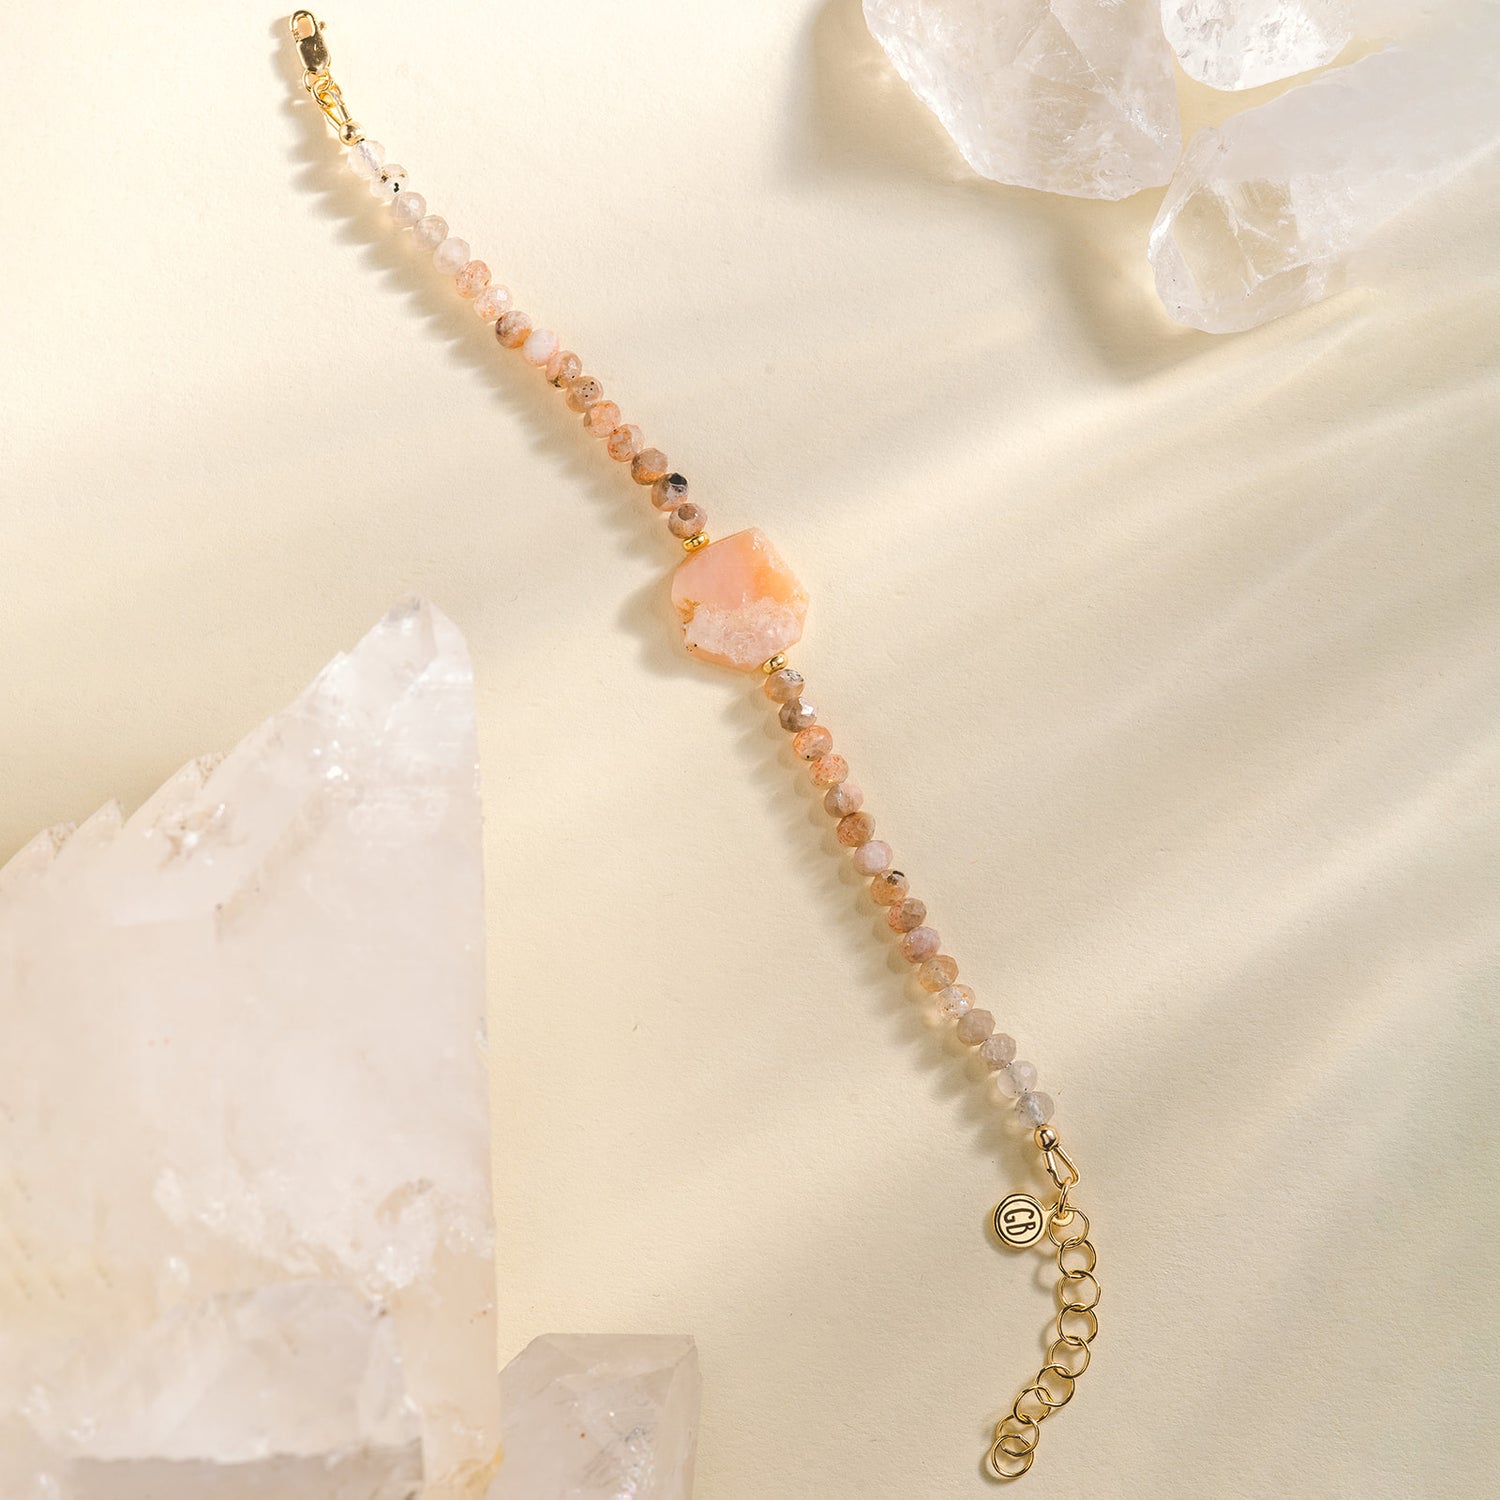 Crystal Bracelet - Pink Opal and Sunstone